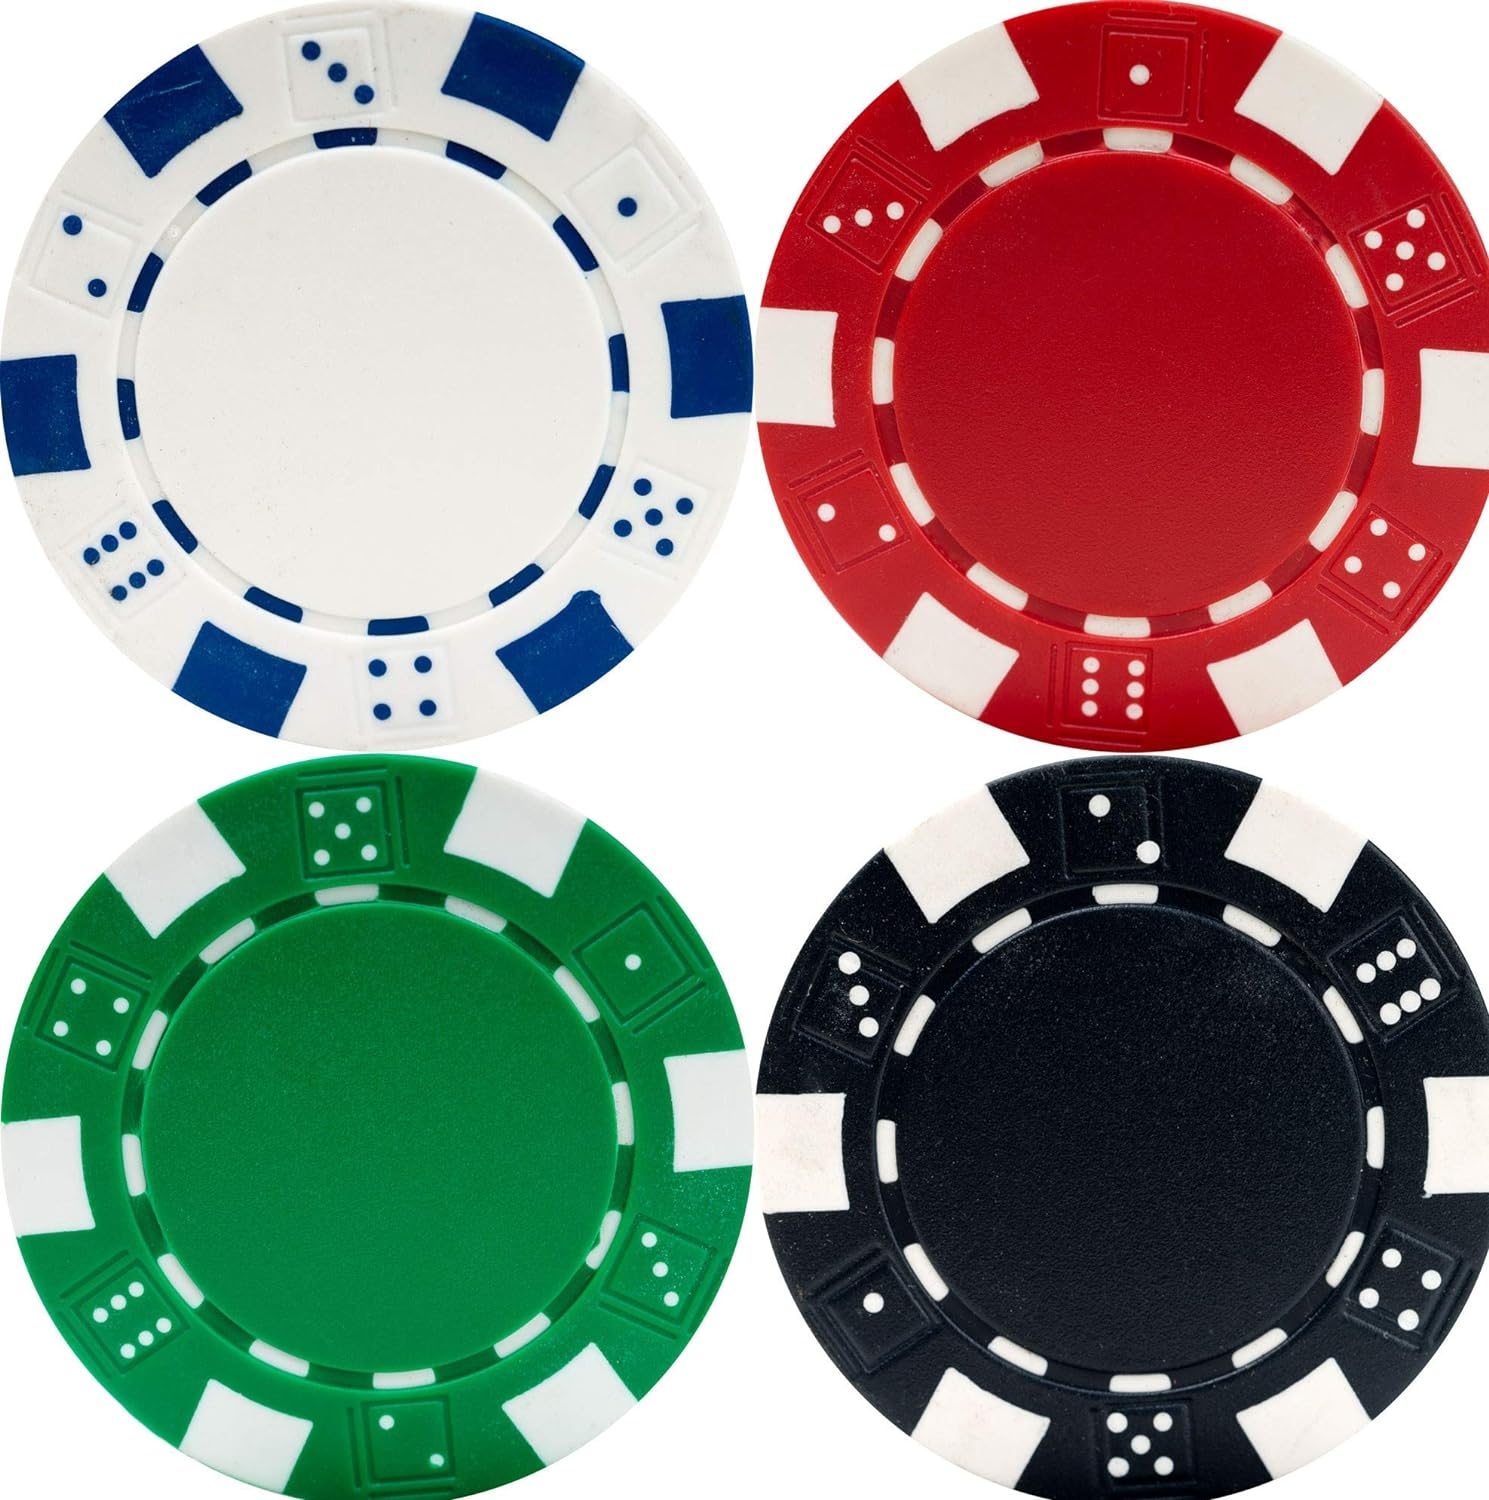 Best Poker Sets Gaming